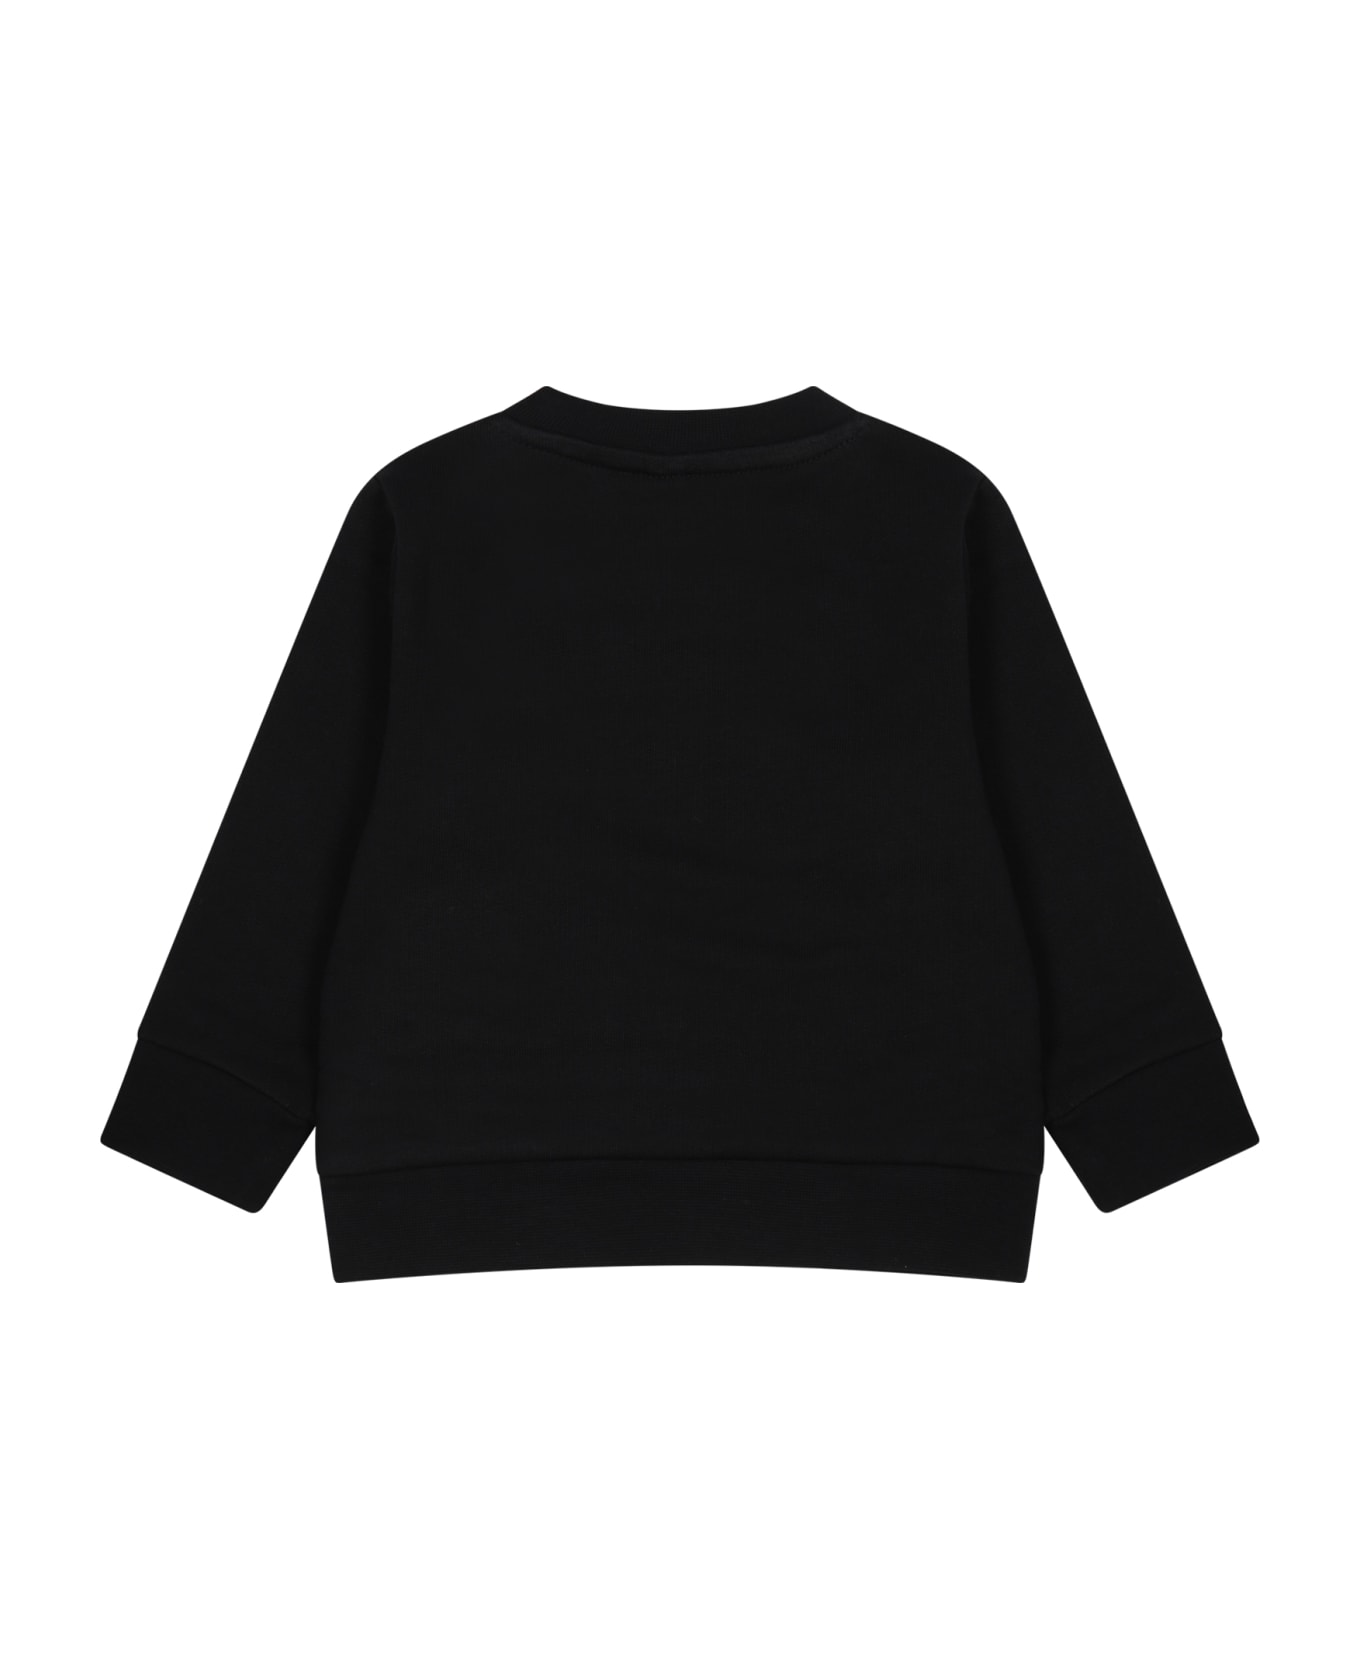 Stella McCartney Kids Black Sweatshirt For Baby Boy With Print - Black ニットウェア＆スウェットシャツ